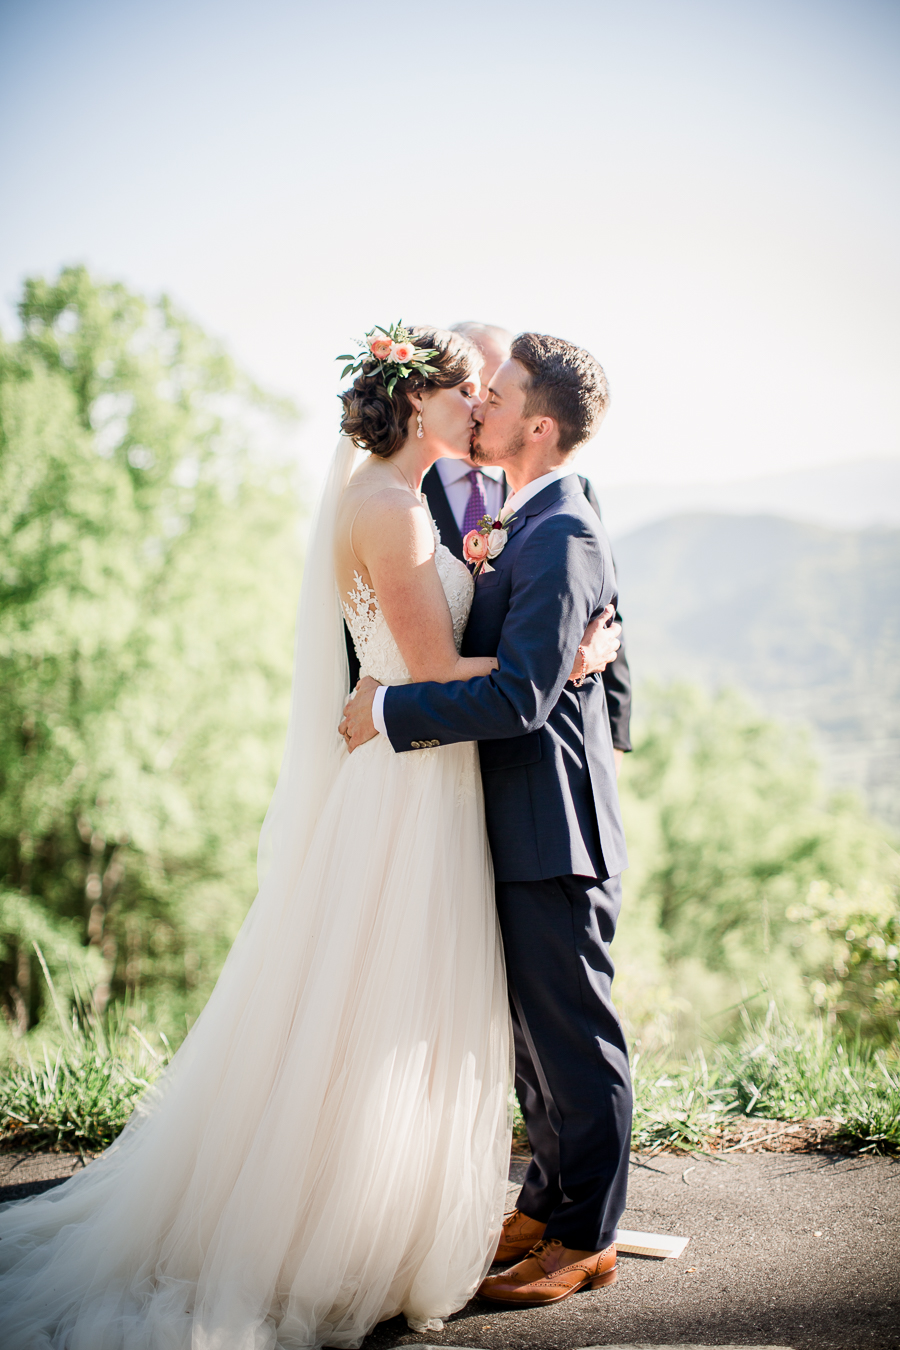 Kissing his new Bride at this North Carolina Elopement by Knoxville Wedding Photographer, Amanda May Photos.